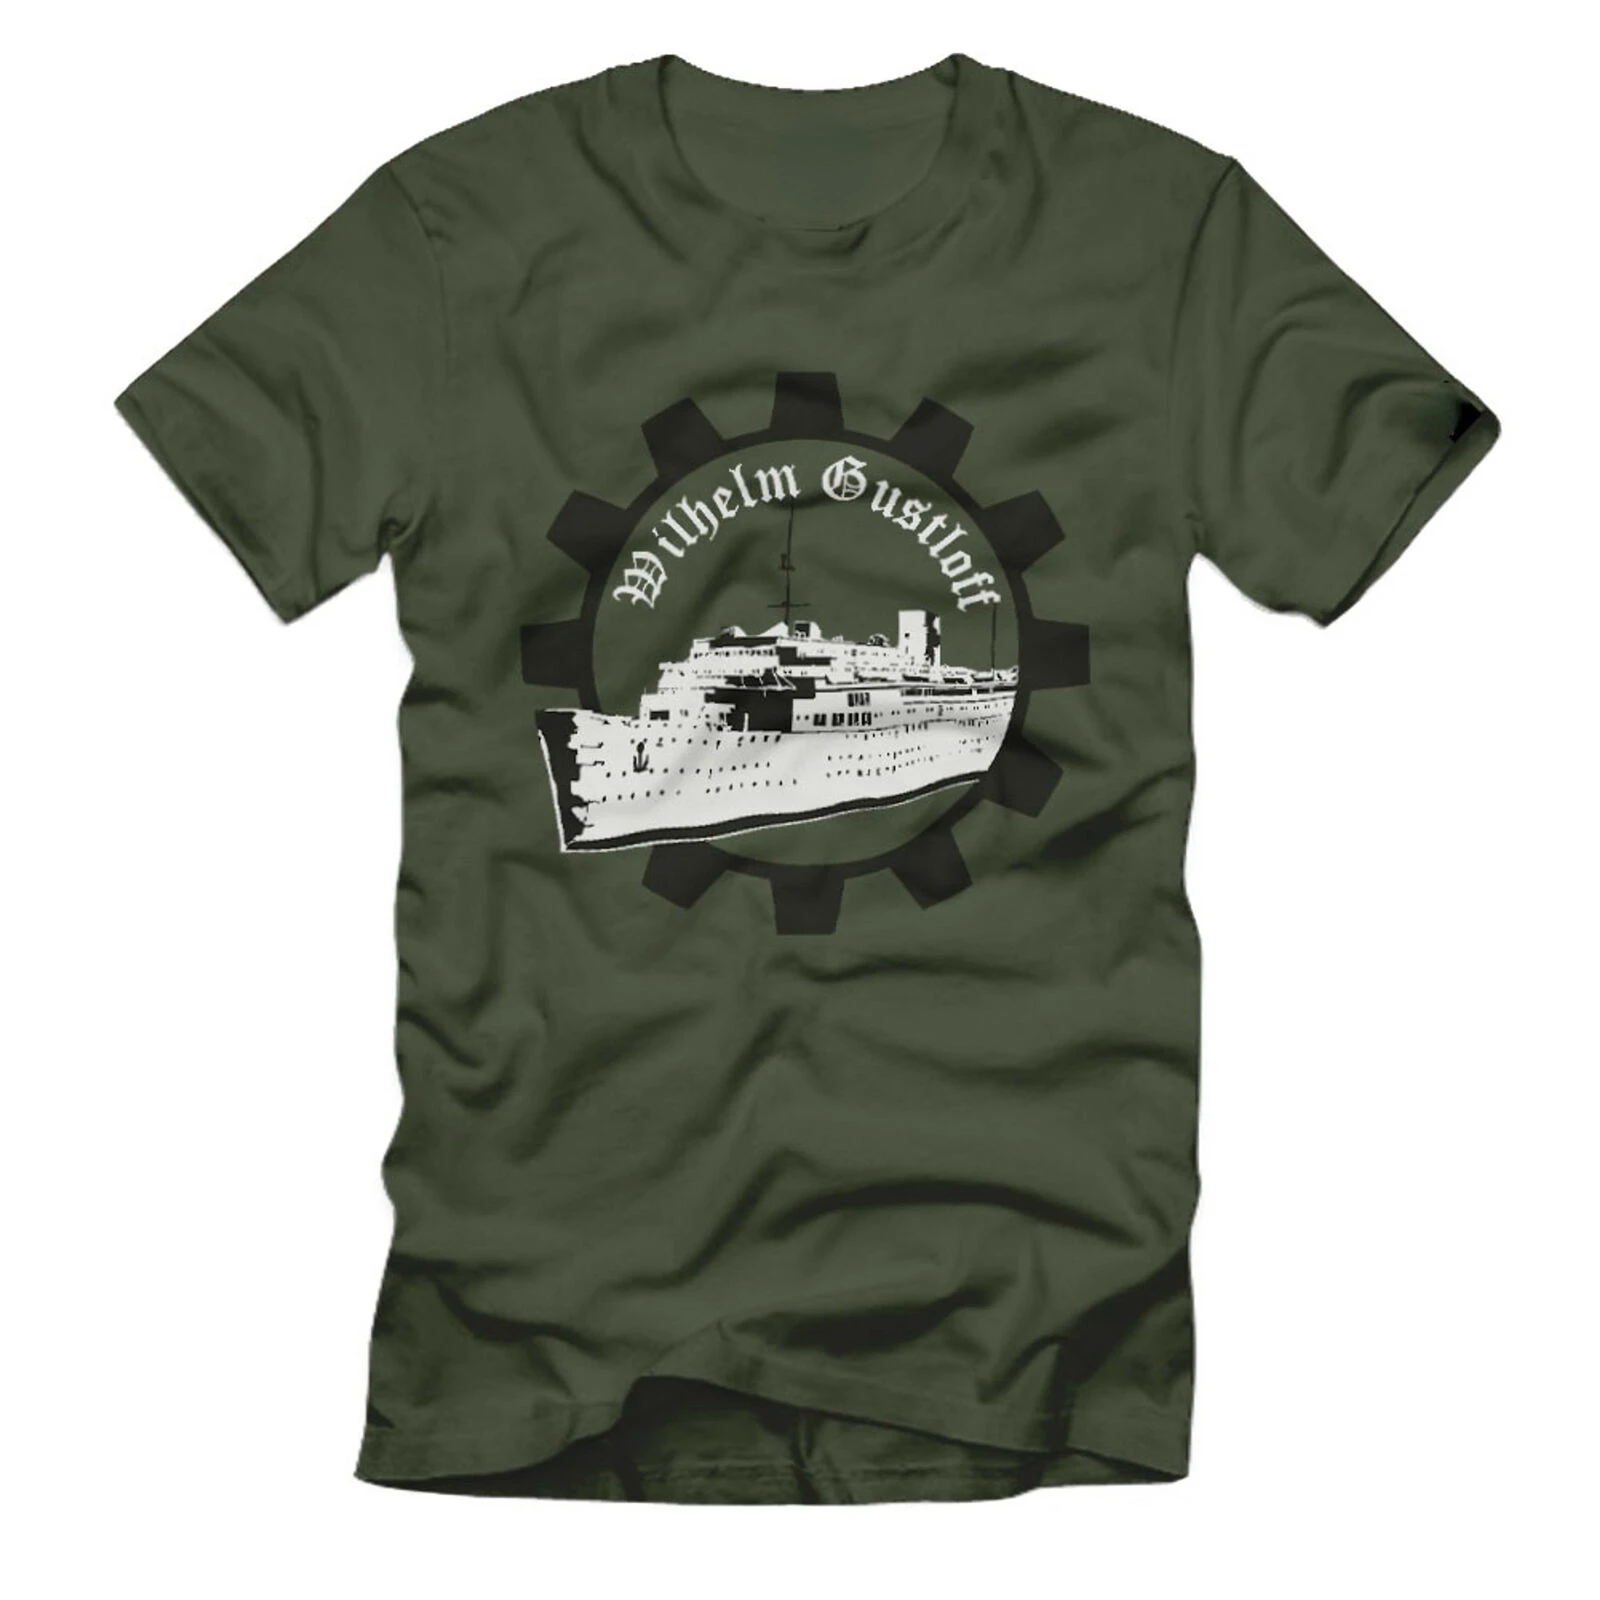 

Wilhelm Gustloff Deutschland Marine Lazeretschiff Katastrophe - T Shirt 100% Cotton Short Sleeve O-Neck Casual T-shirts New